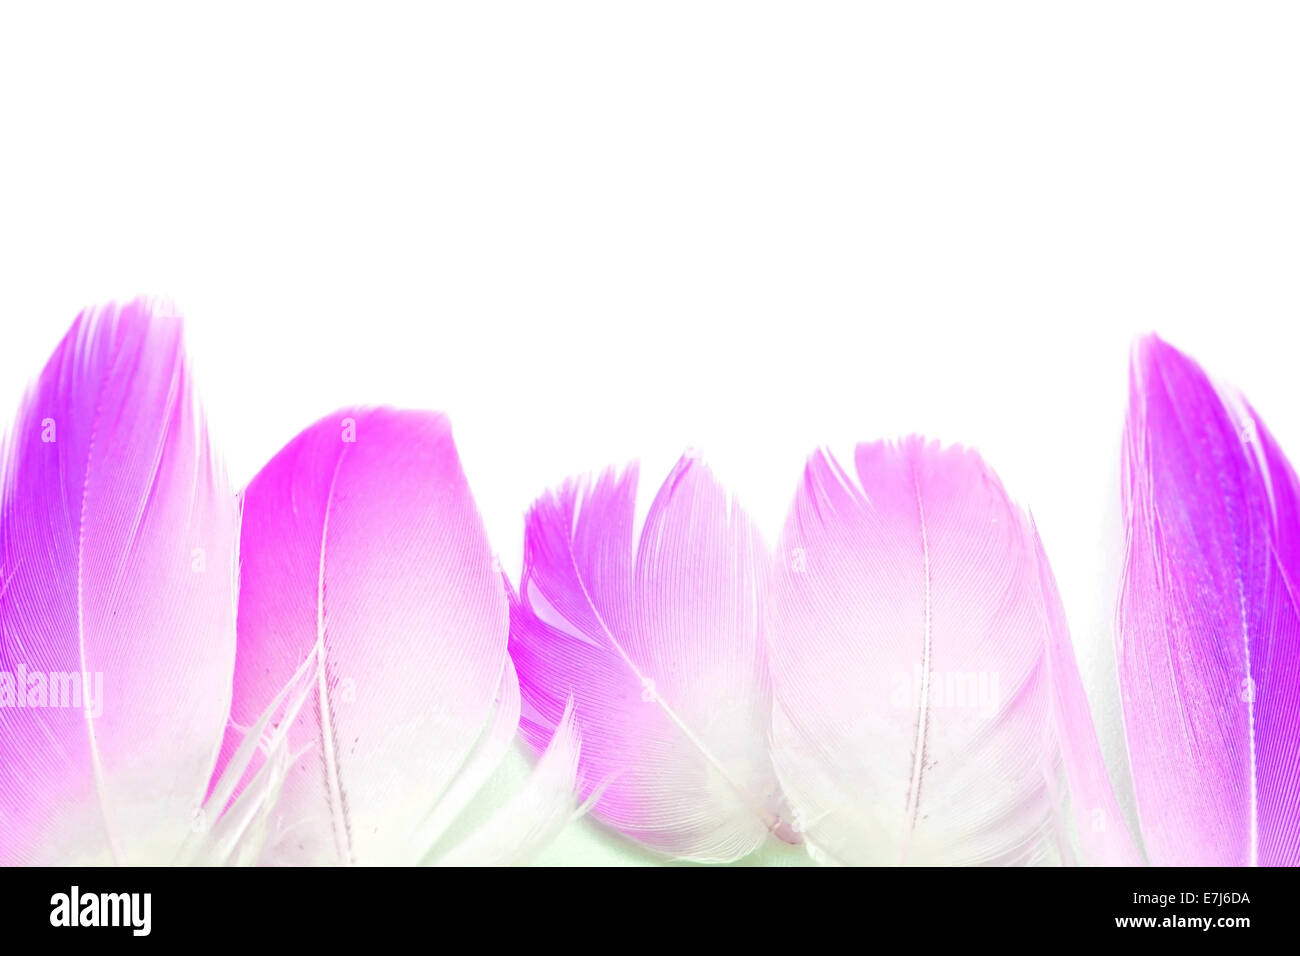 Ensemble de flamingo feather, isolé sur fond blanc, l'image du filtre Banque D'Images